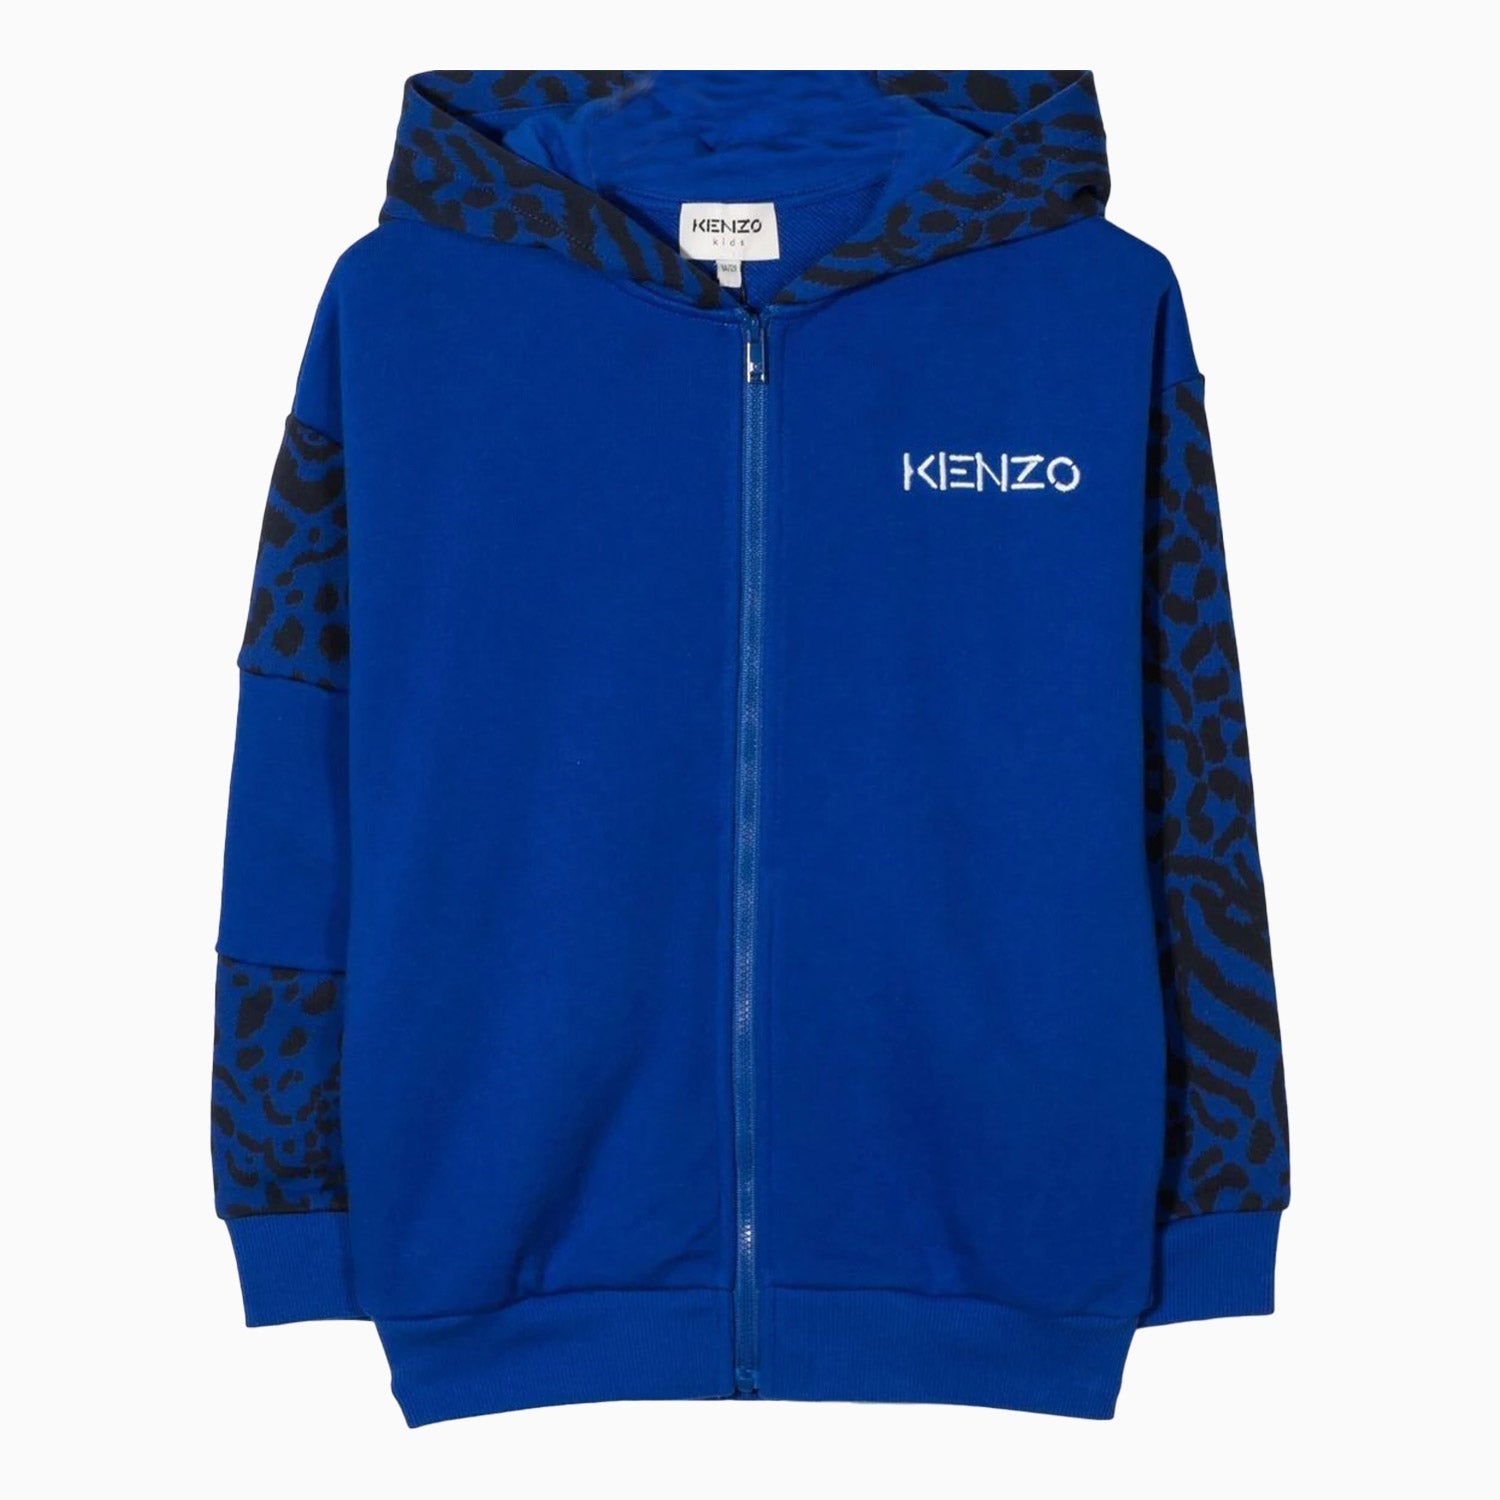 Kenzo Kid's Cardigan Hoodie - Color: Blue - Kids Premium Clothing -